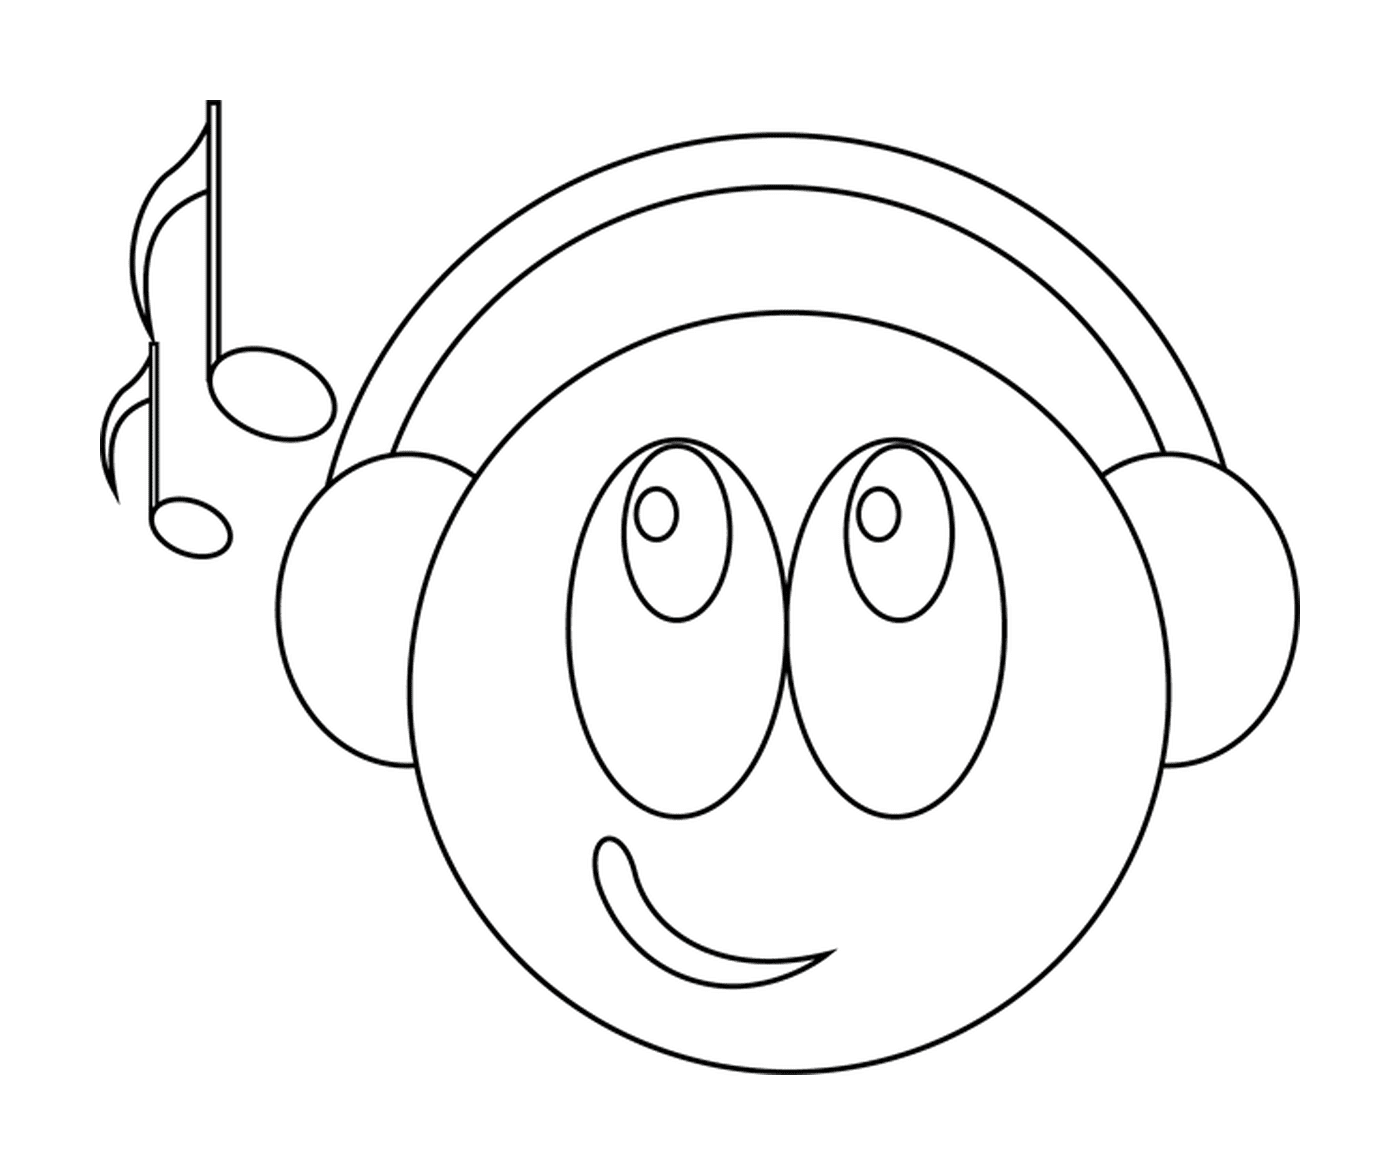  Smiley with audio headphones 